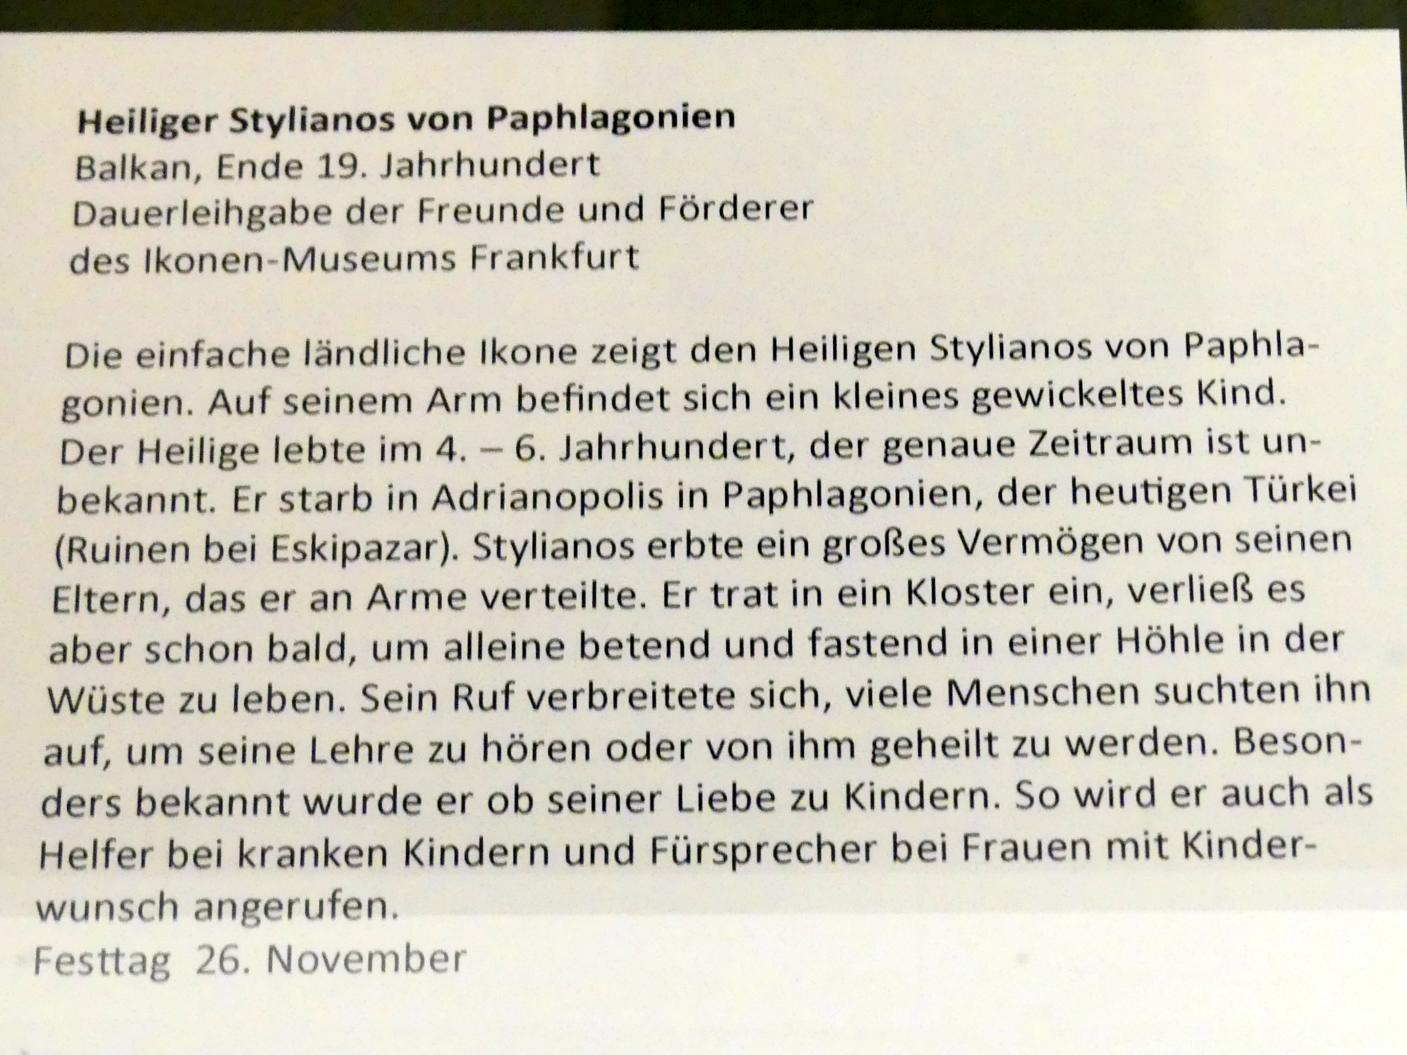 Heiliger Stylianos von Paphlagonien, Frankfurt am Main, Ikonen-Museum, Obergeschoss, Ende 19. Jhd., Bild 2/2